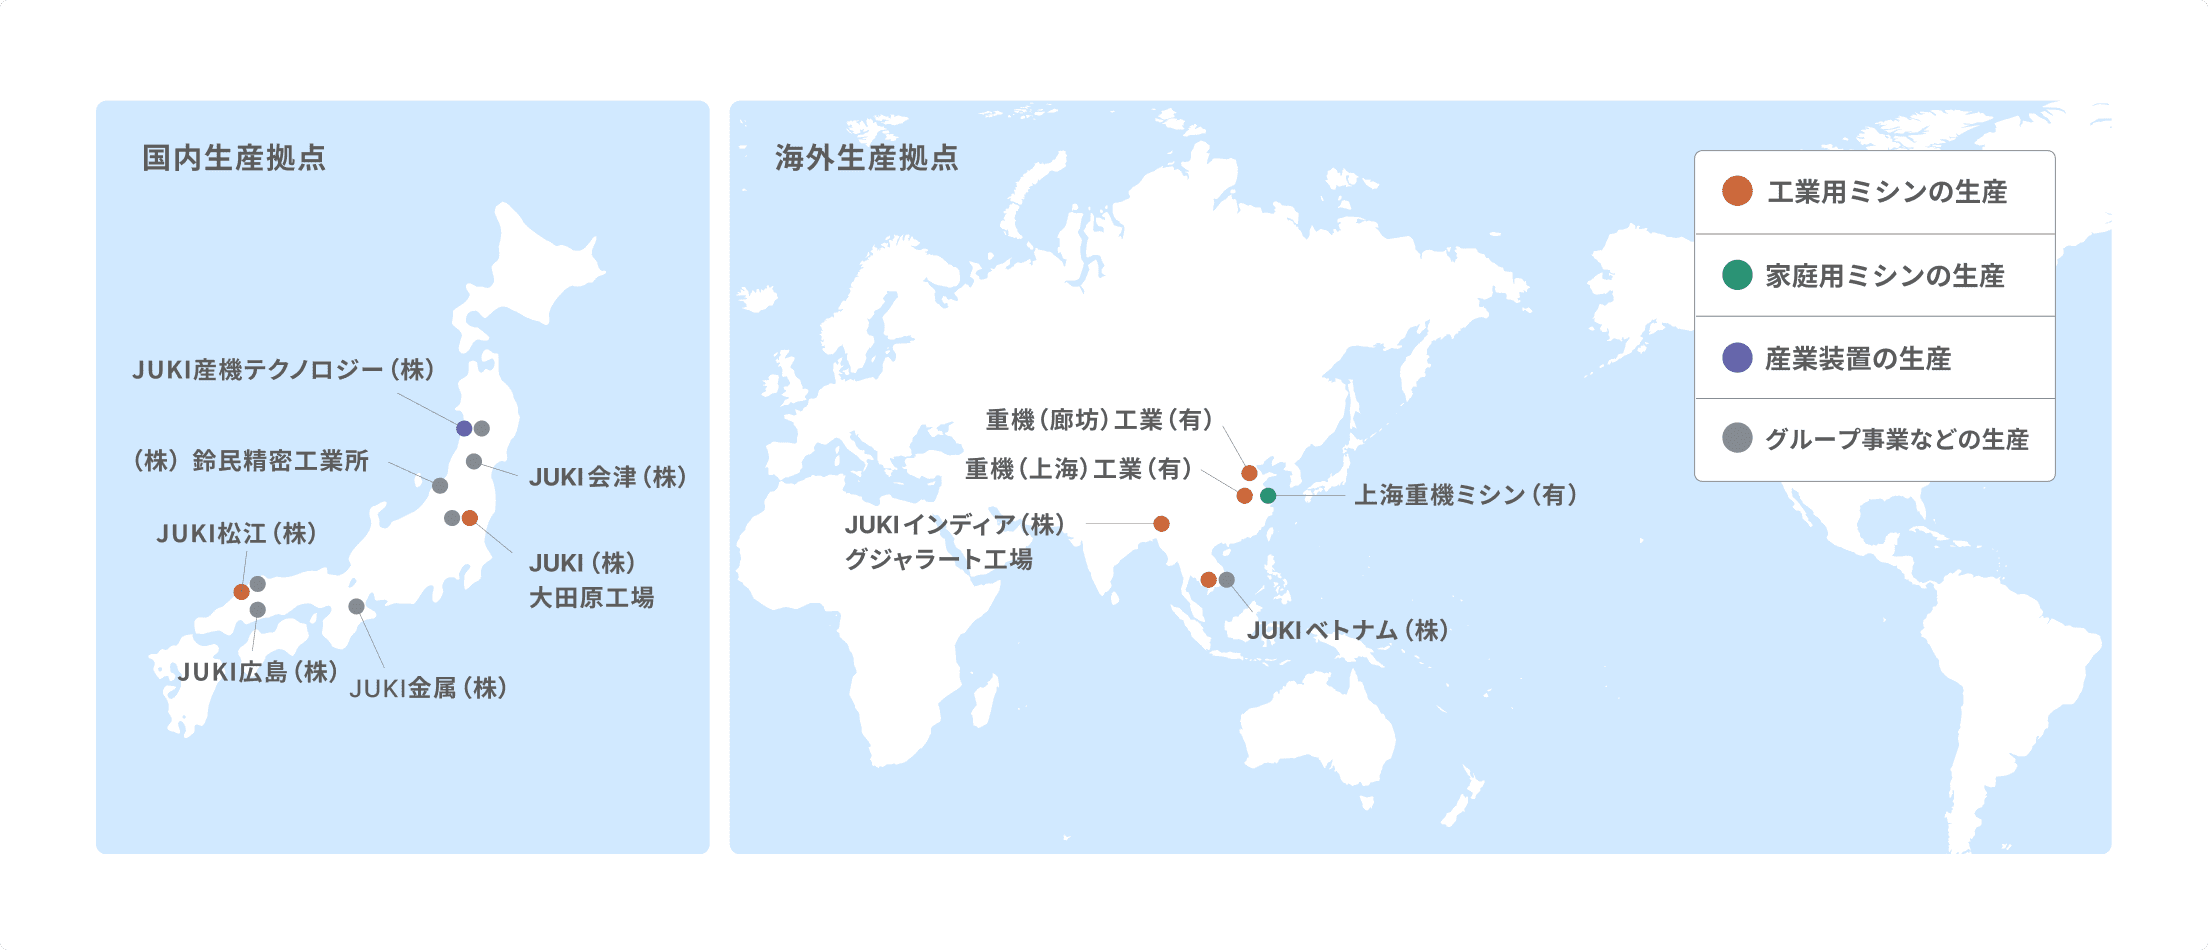 グローバルな開発拠点を示した世界地図